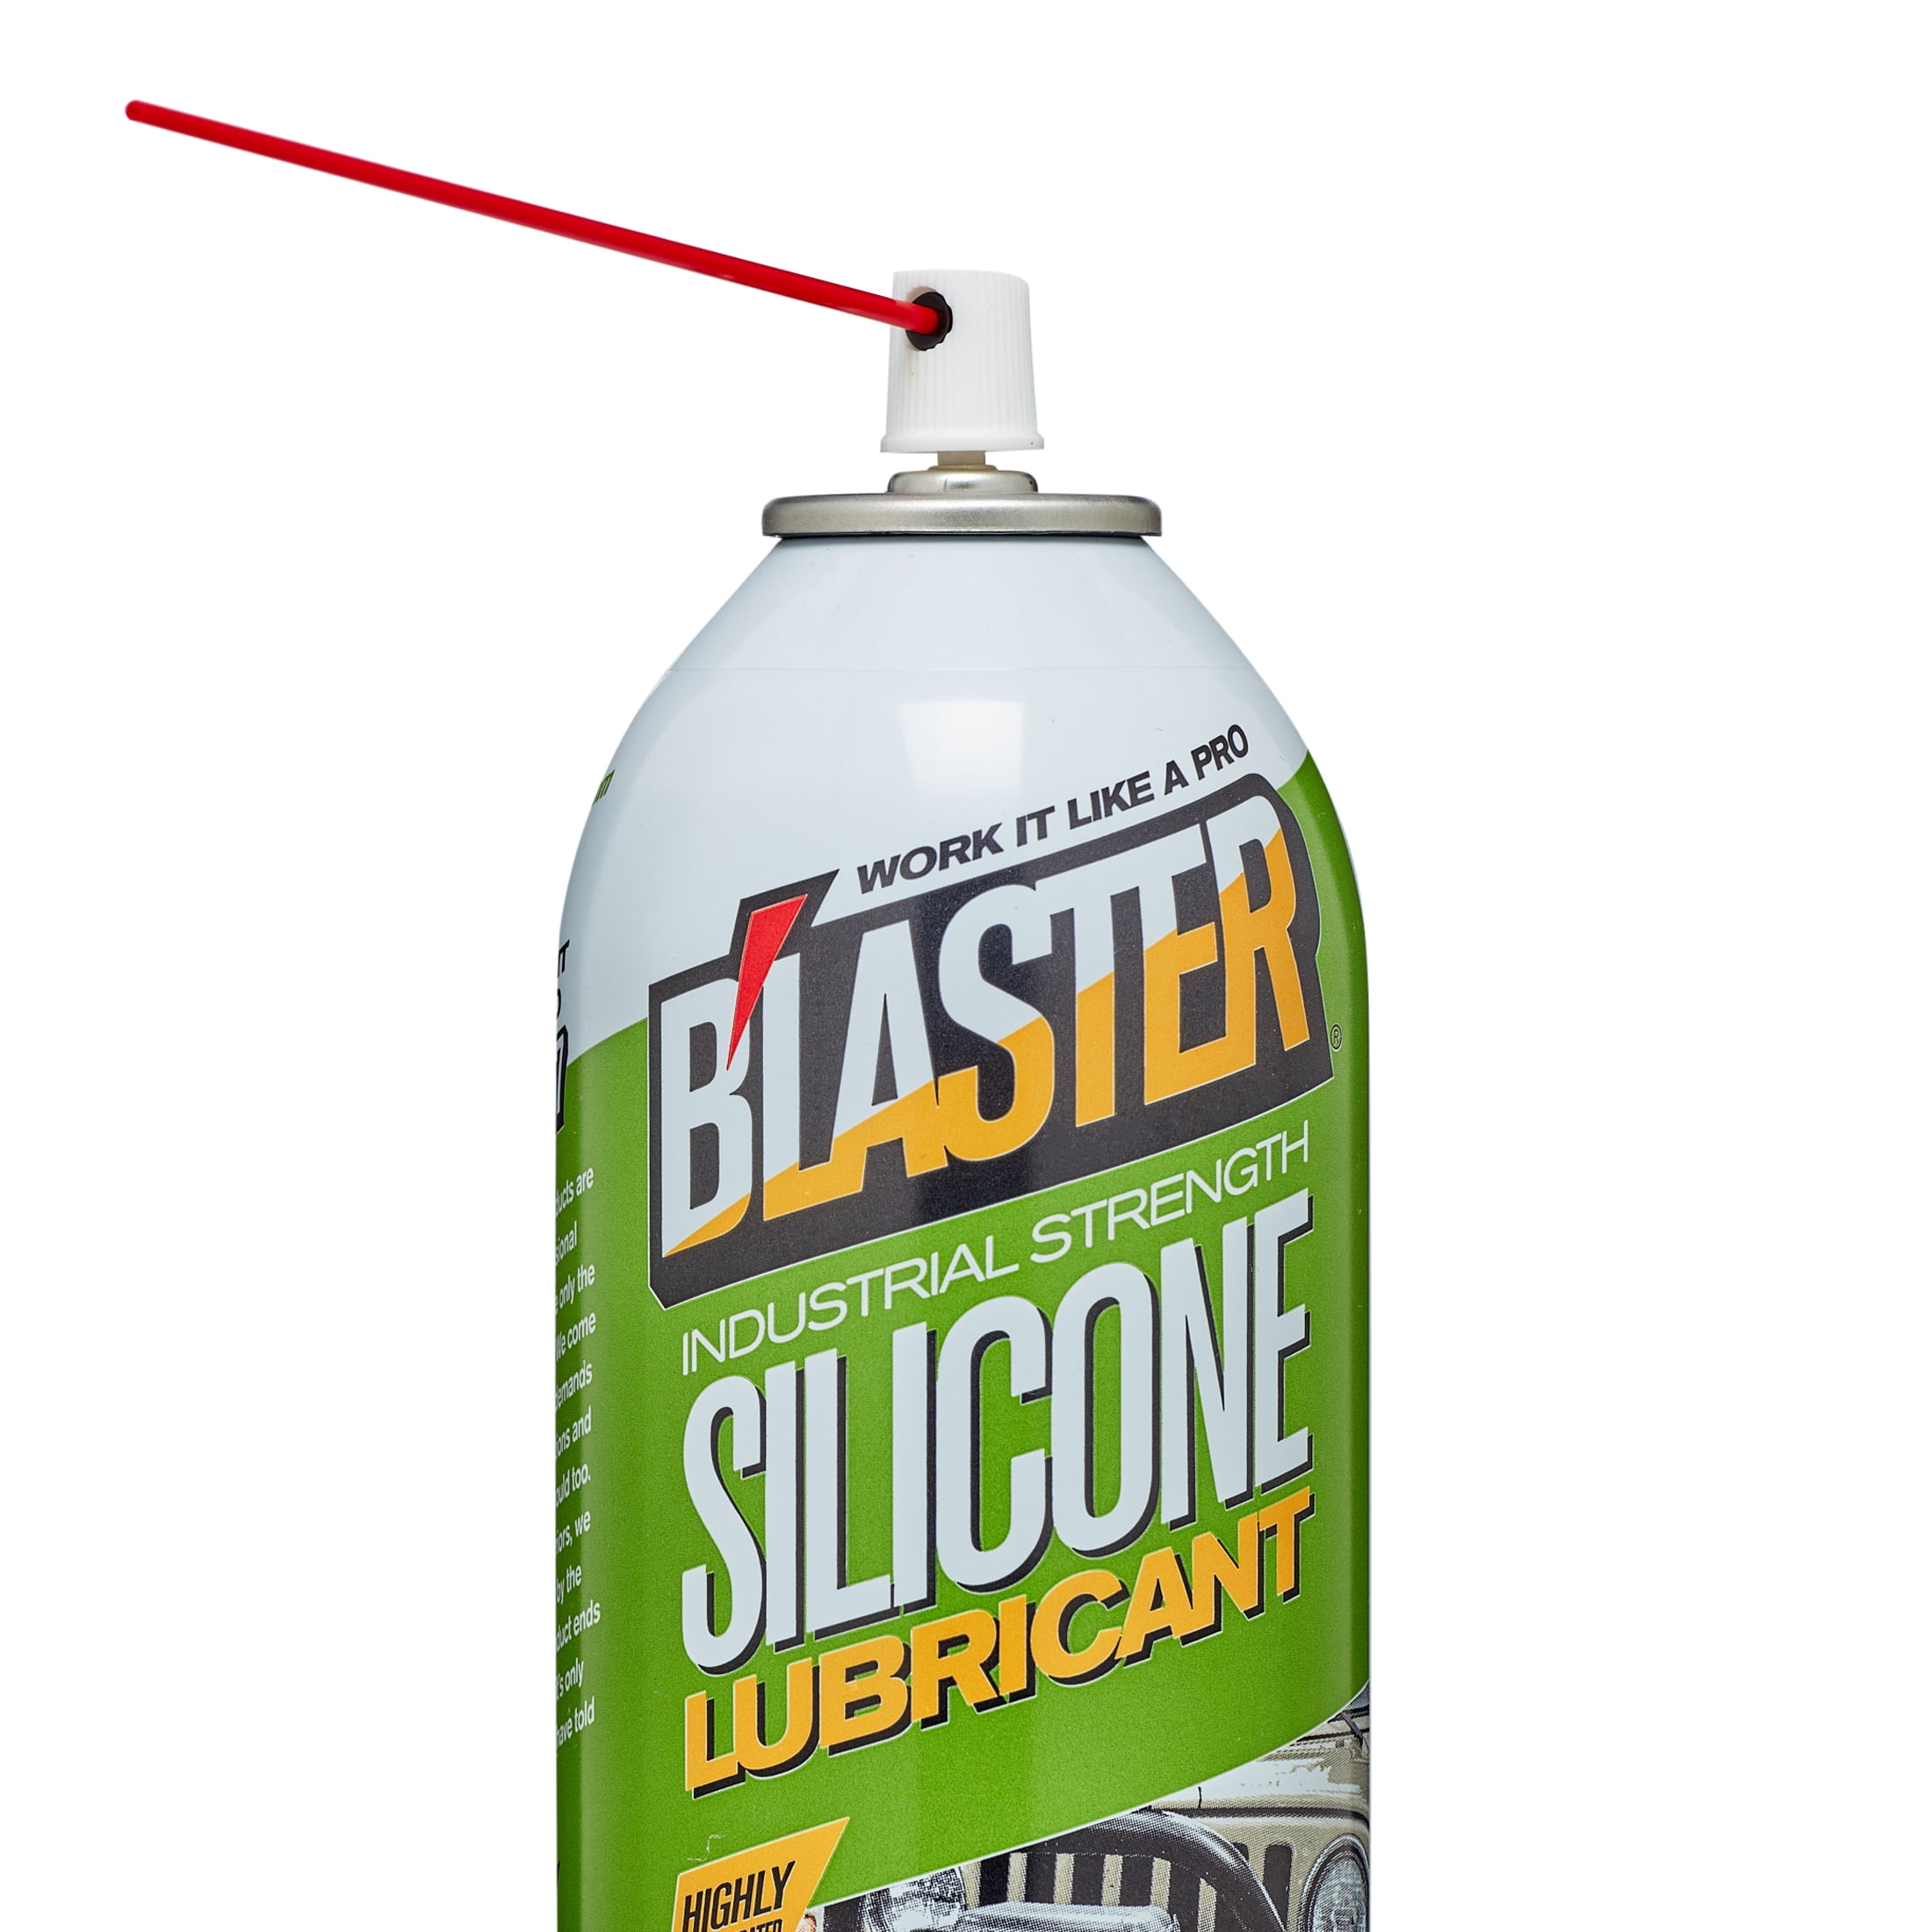 Blaster 9.3 oz. Premium Silicone Garage Door Lubricant Spray (Pack of 12)  32167900251